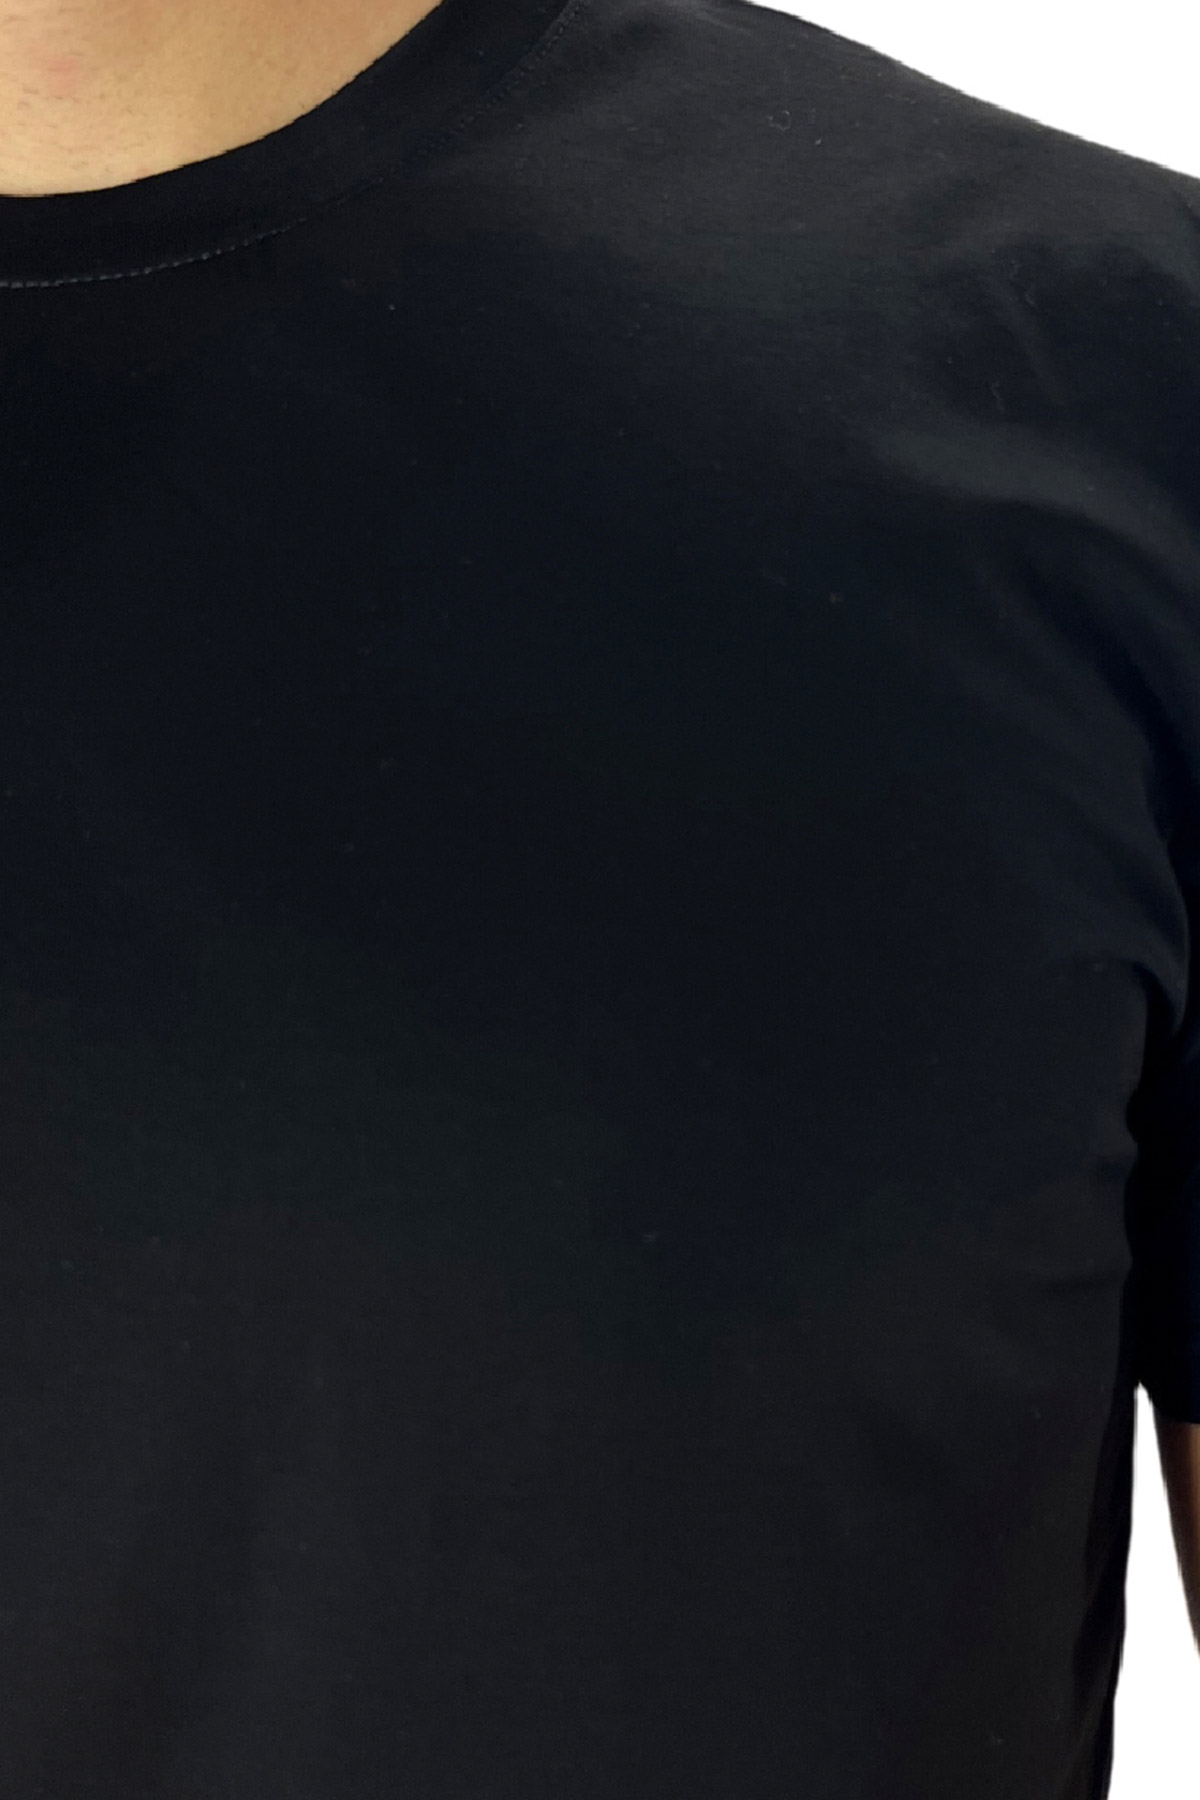 T-shirt da uomo filo di scozia nera 100% cotone slim fit tinta unita Made In Italy